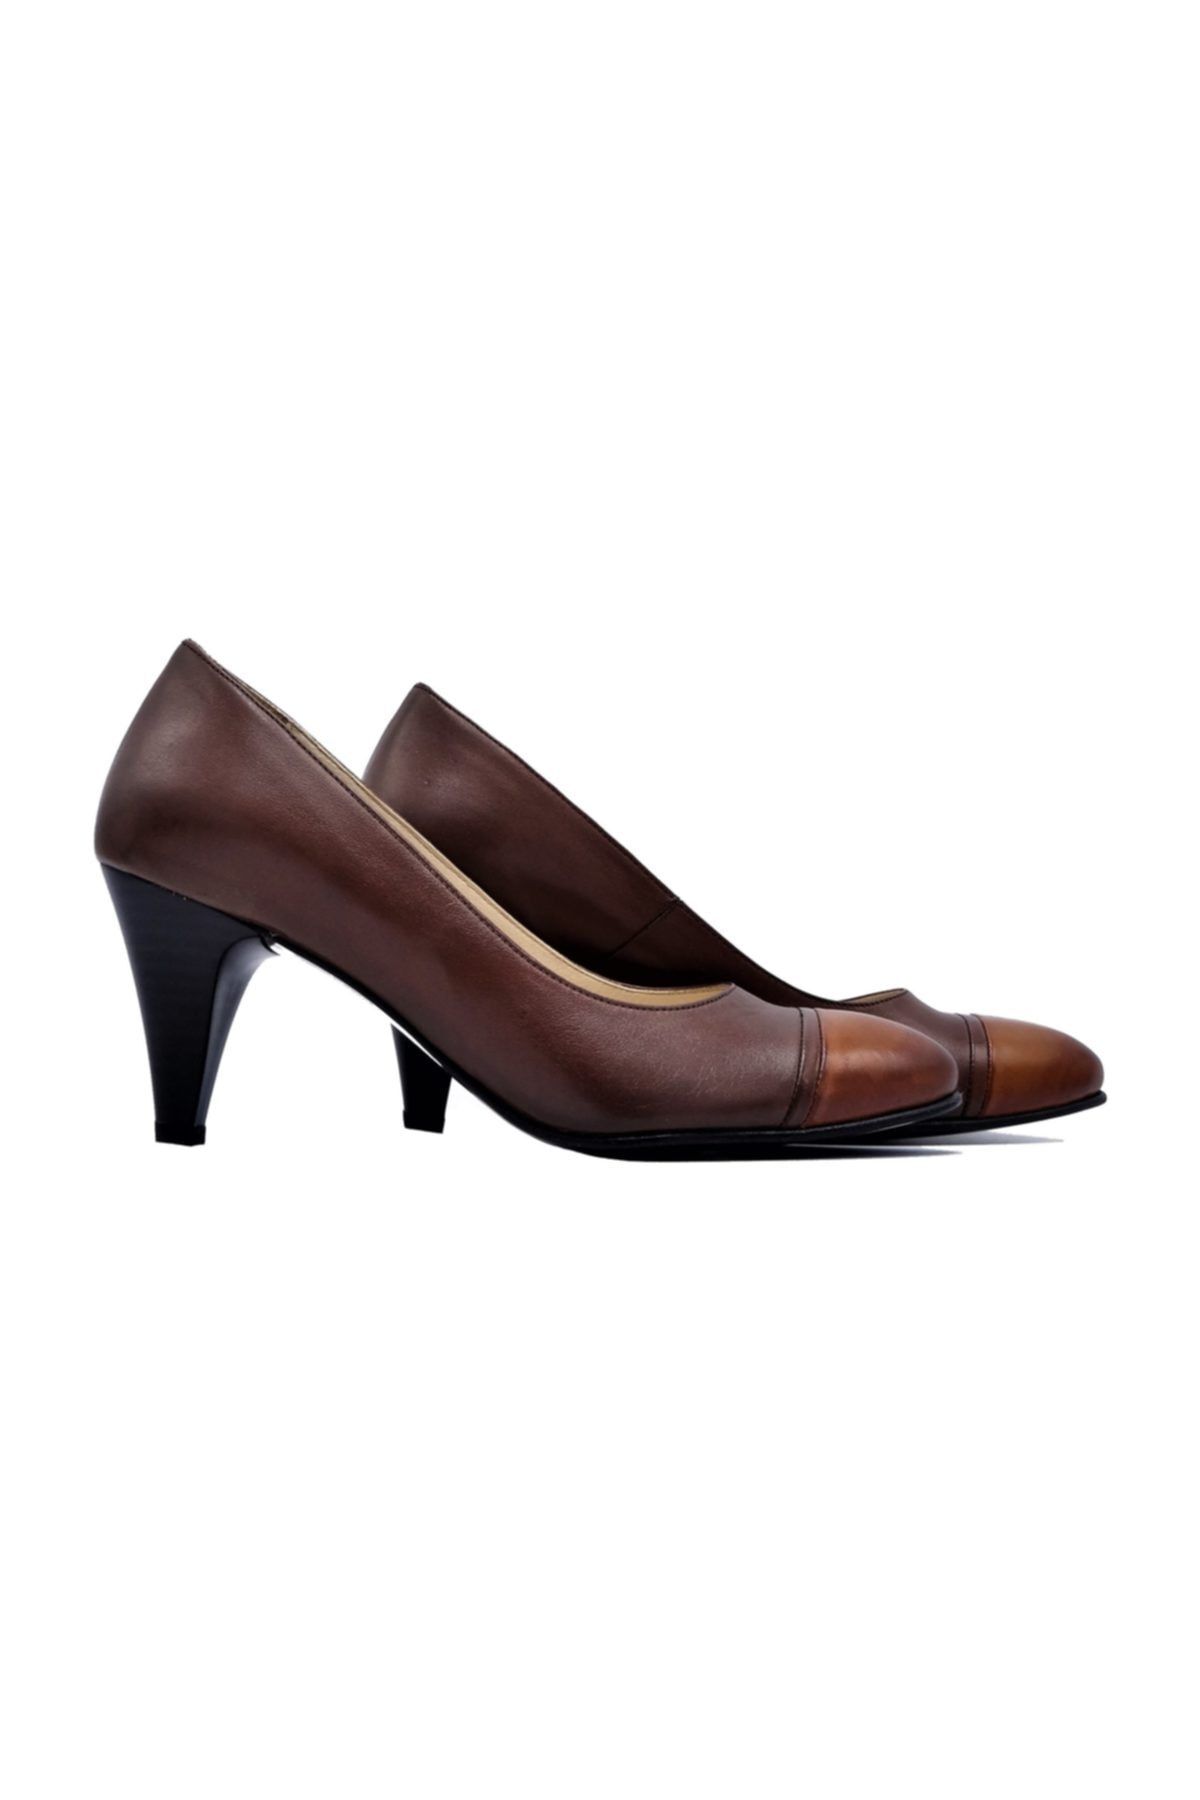 Zaim Kundura Hakiki Deri Kahverengi Kadın Klasik Topuklu Ayakkabı 505061530-1